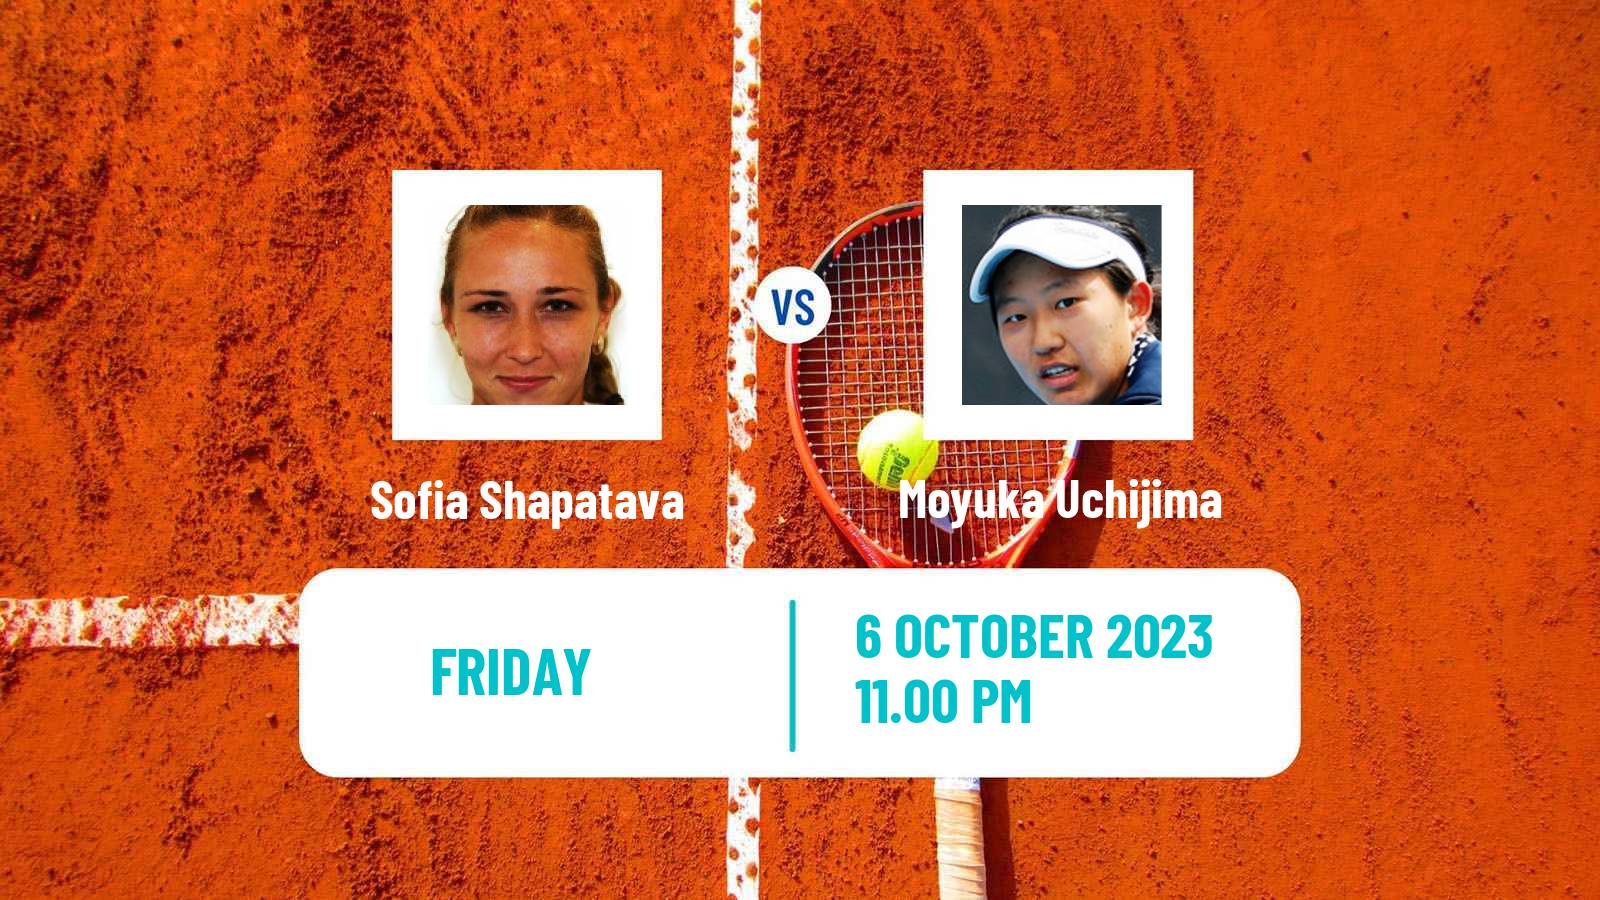 Tennis WTA Zhengzhou Sofia Shapatava - Moyuka Uchijima